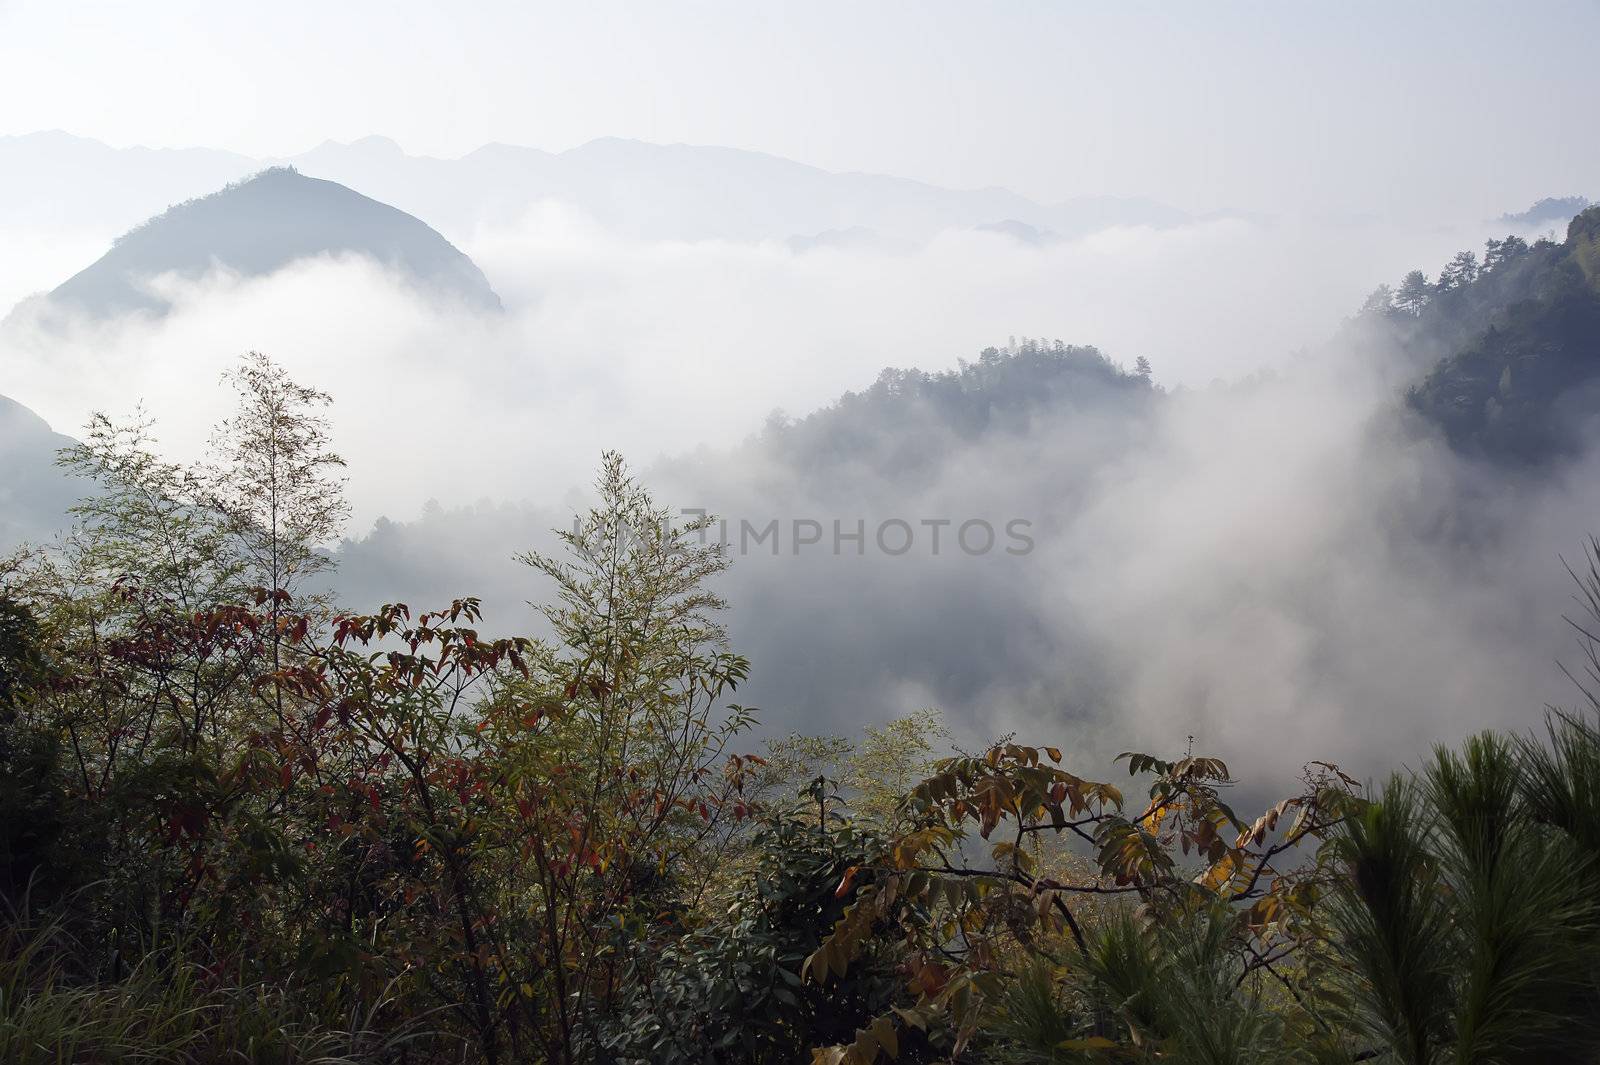 Beautiful scenery in Ziyuan County, Guangxi, China by xfdly5